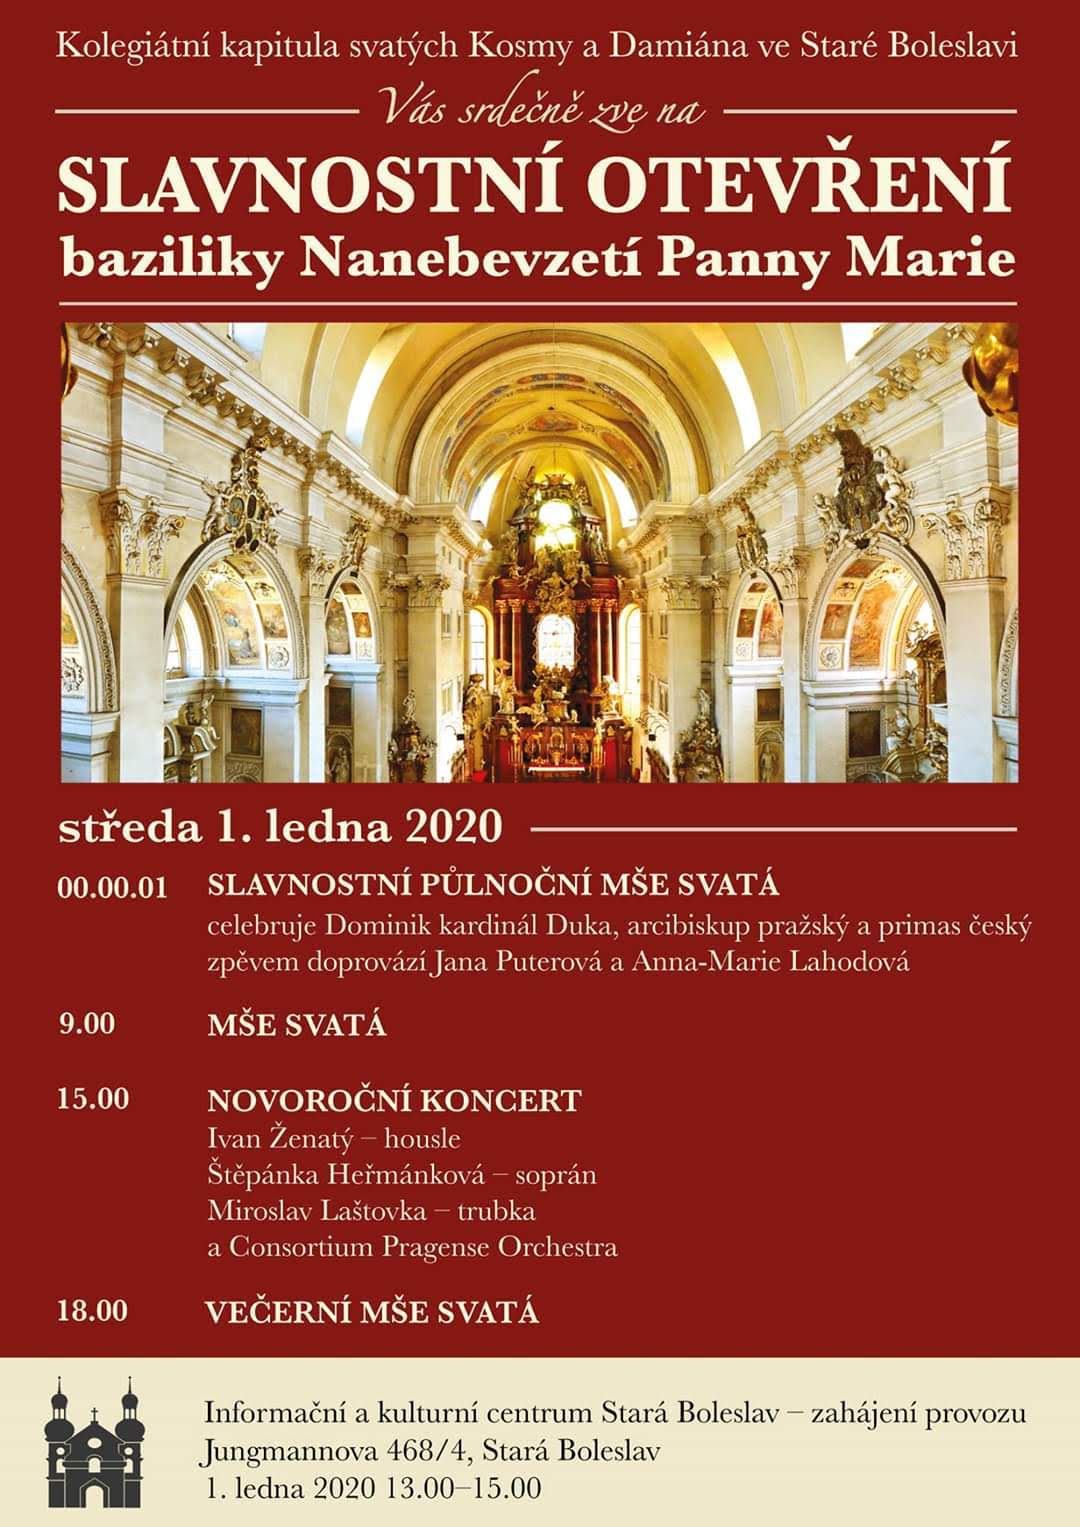 Otevøení basiliky Nanebevzetí Panny Marie ve Staré Boleslavi 1.1.2020 v 00:01